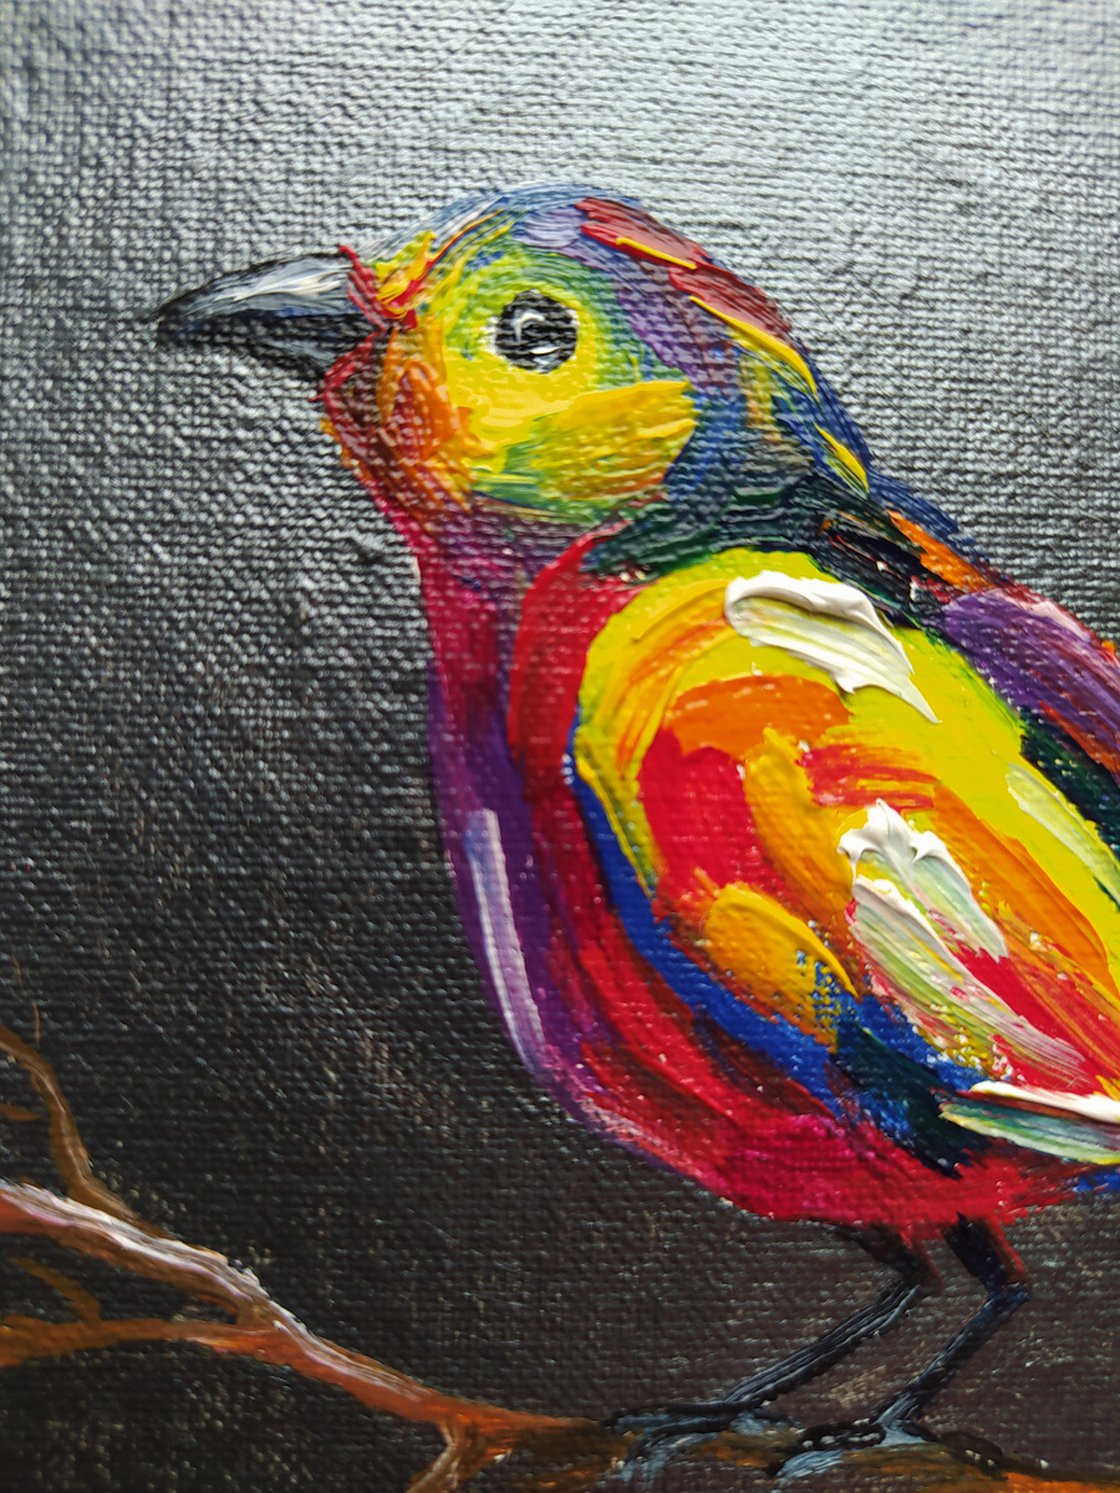 oil pastel drawings of birds